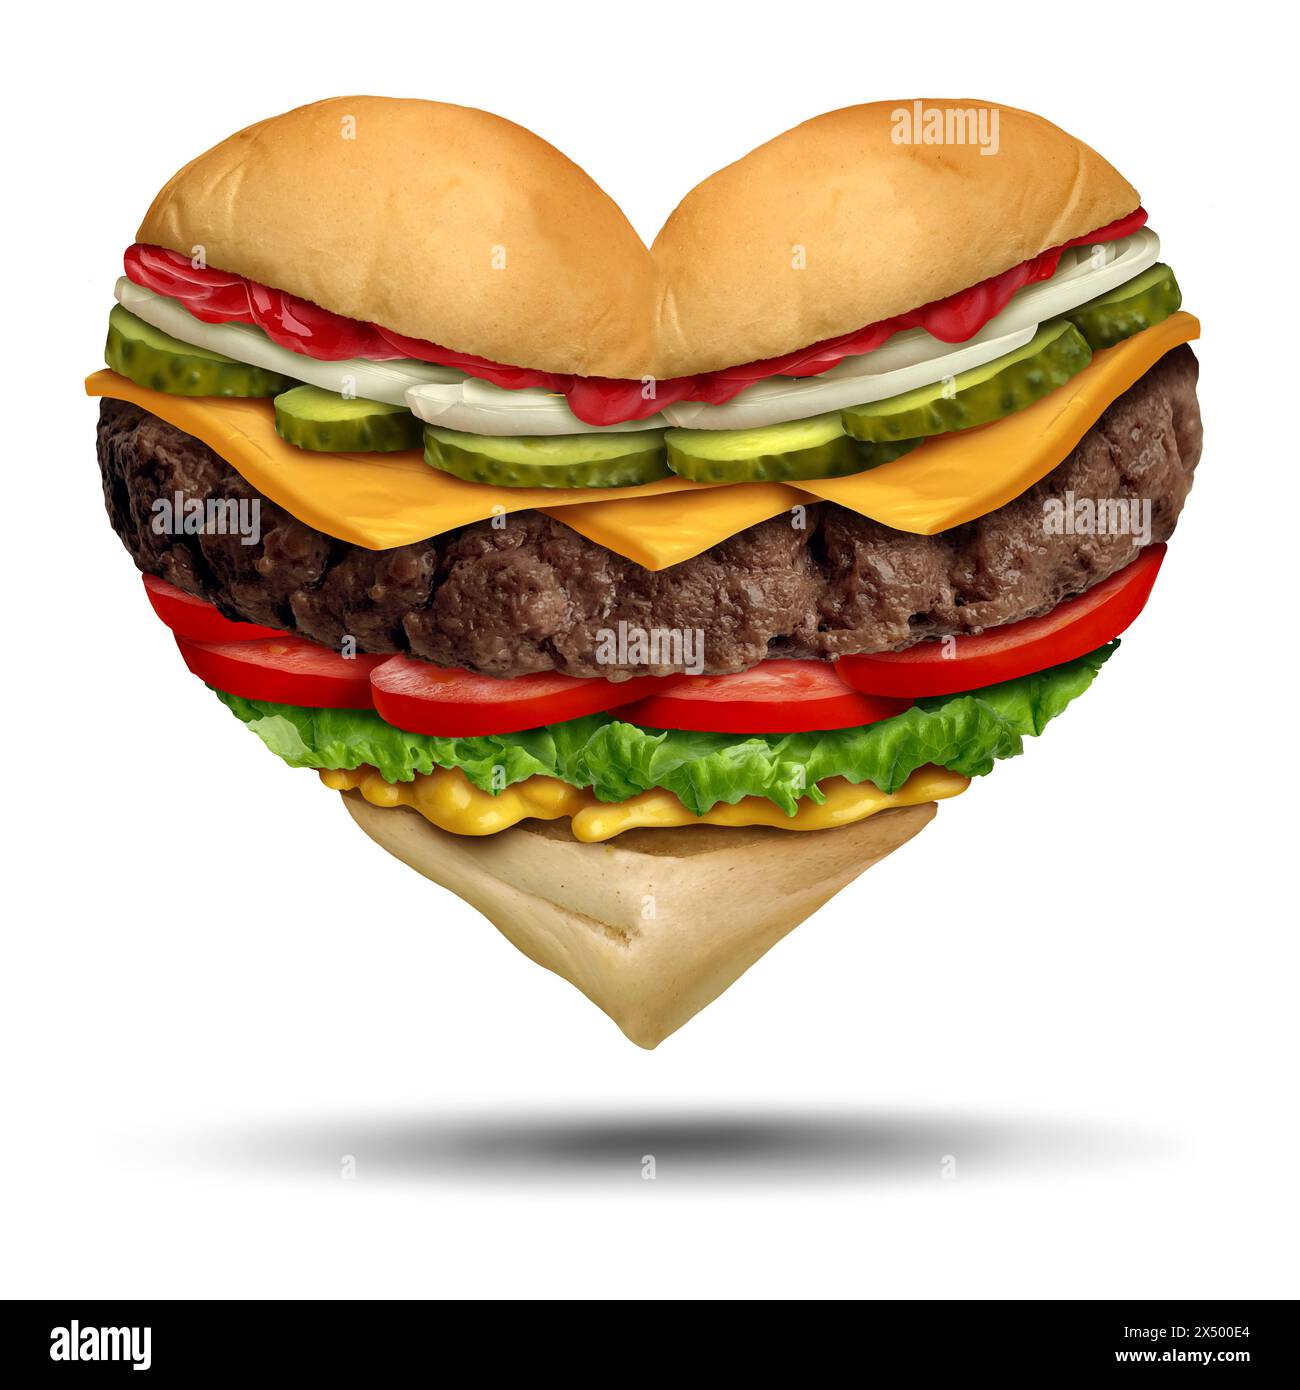 Food Love als Foodie-Symbol für das Vergnügen, als Hamburger oder klassischer Burger-Liebhaber zu essen und ein Herz als Symbol für Geschmack und gute Re zu repräsentieren Stockfoto